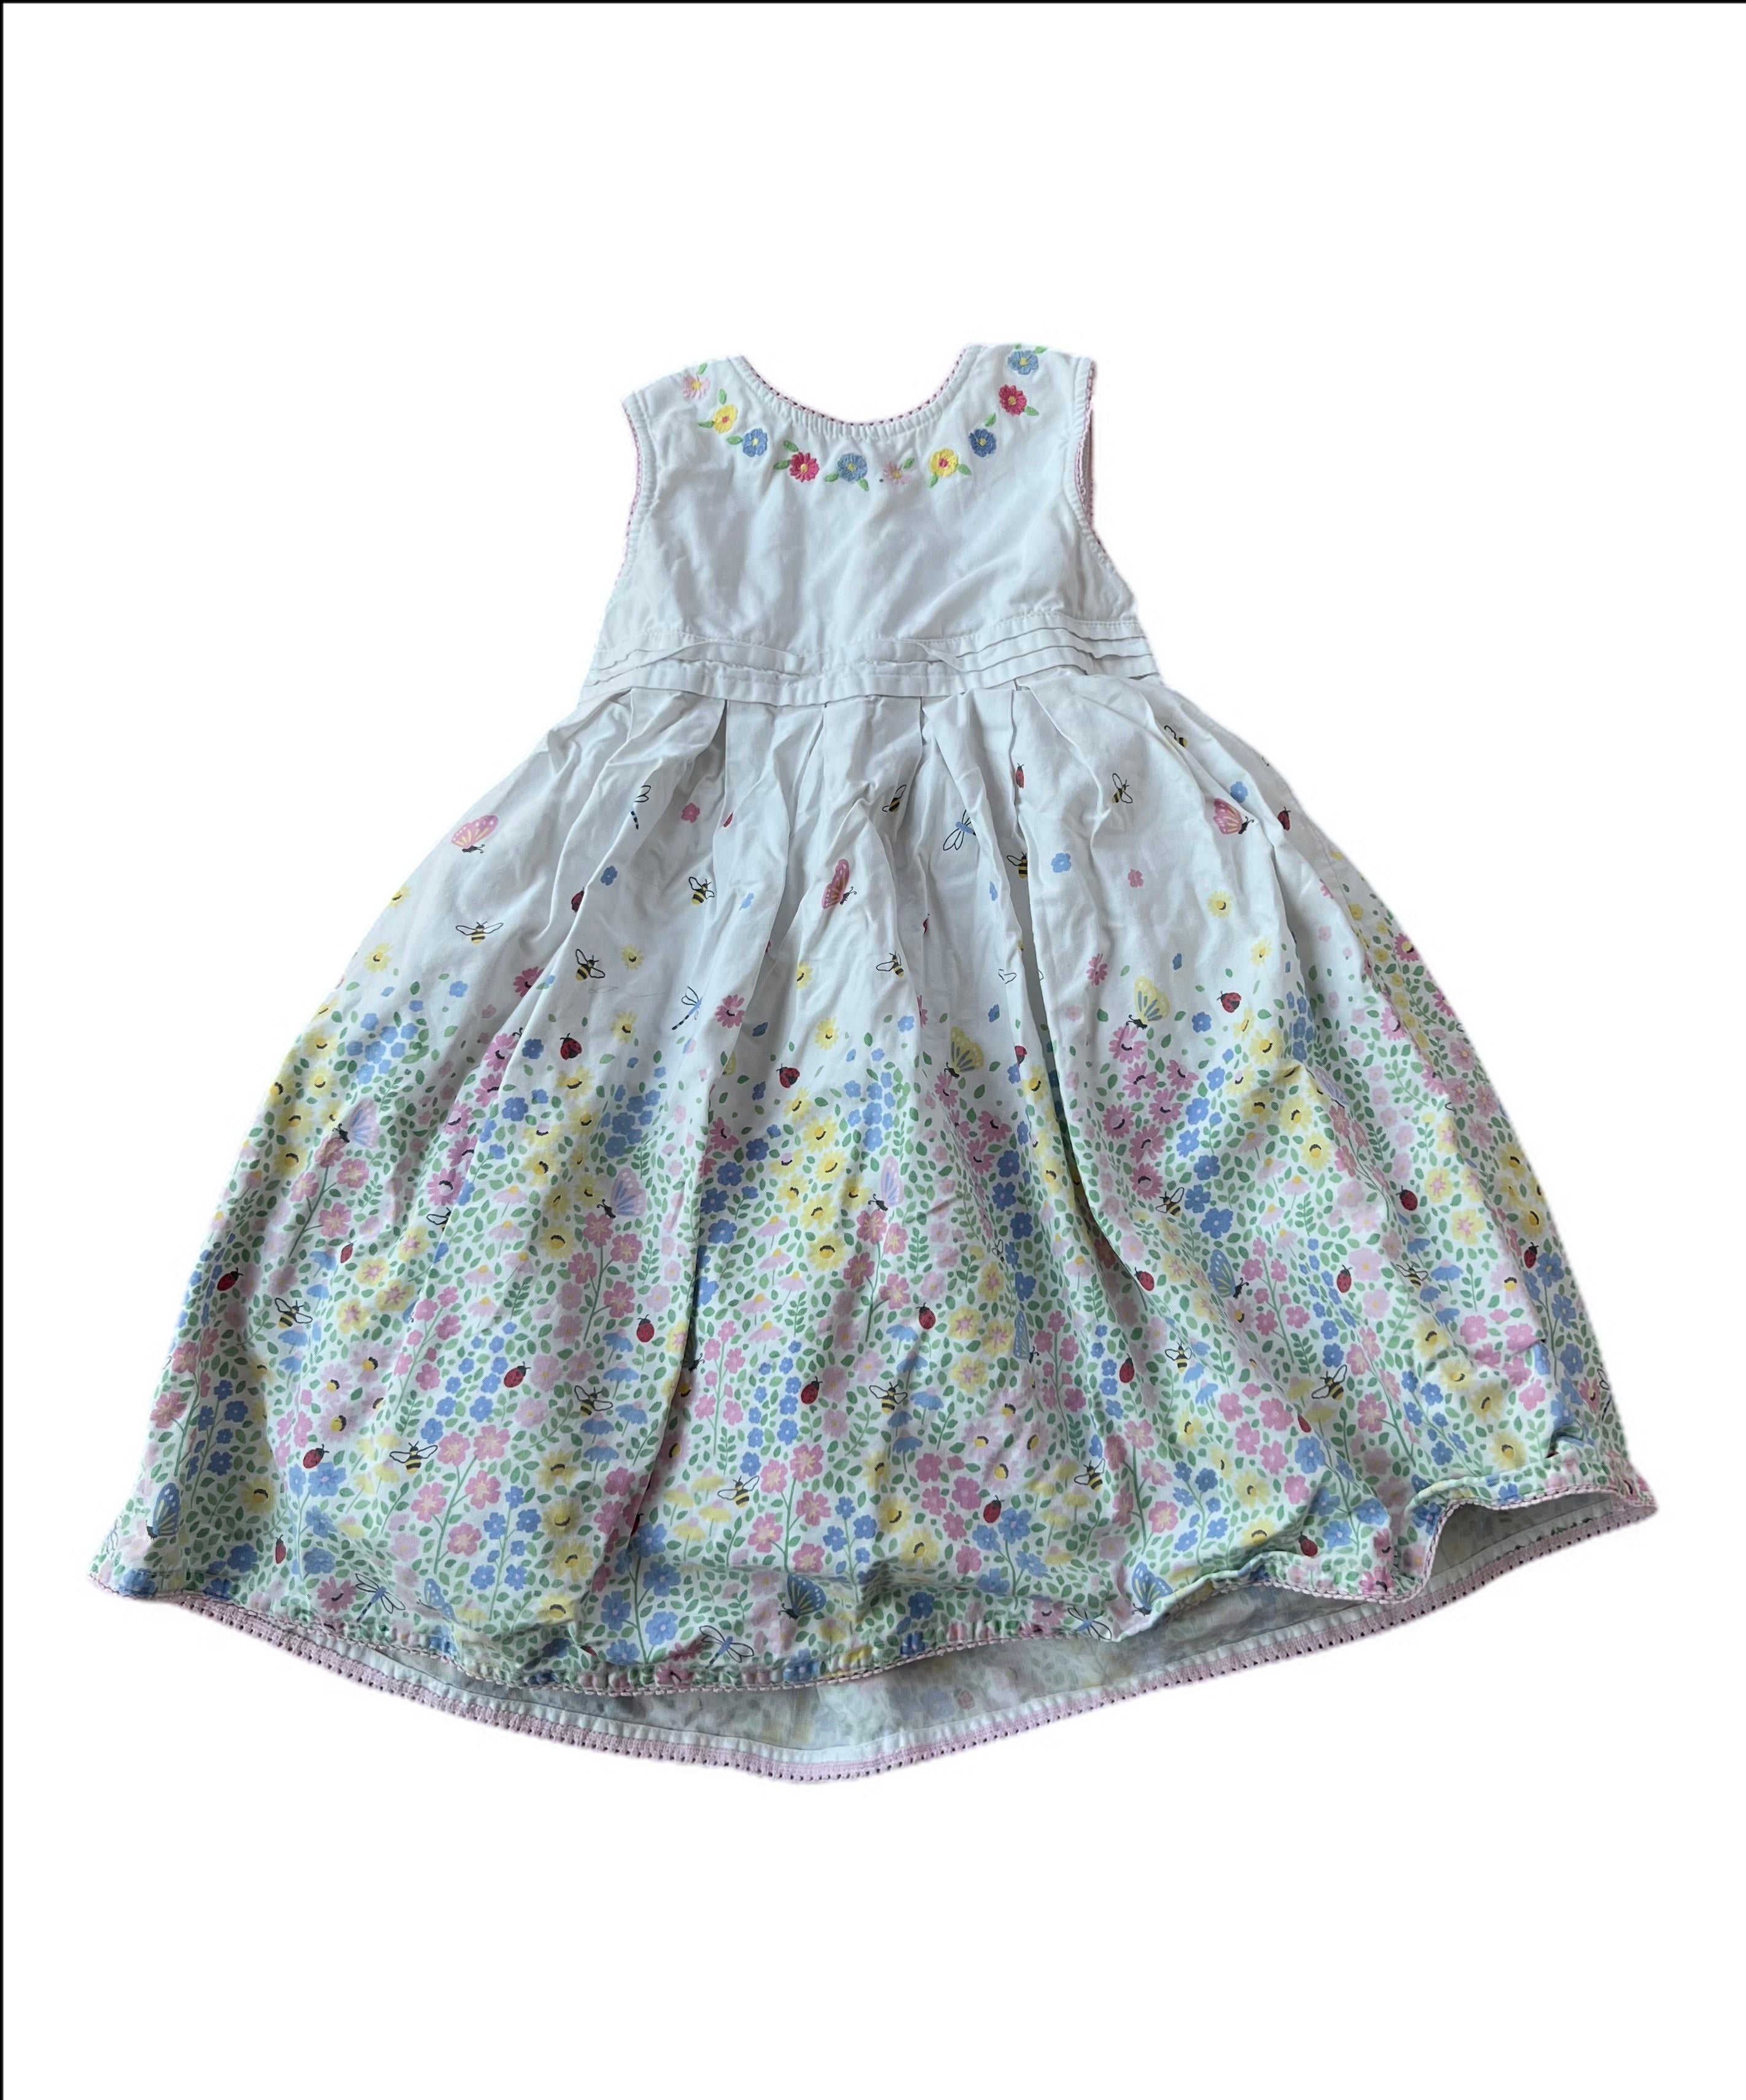 Floral apron dress